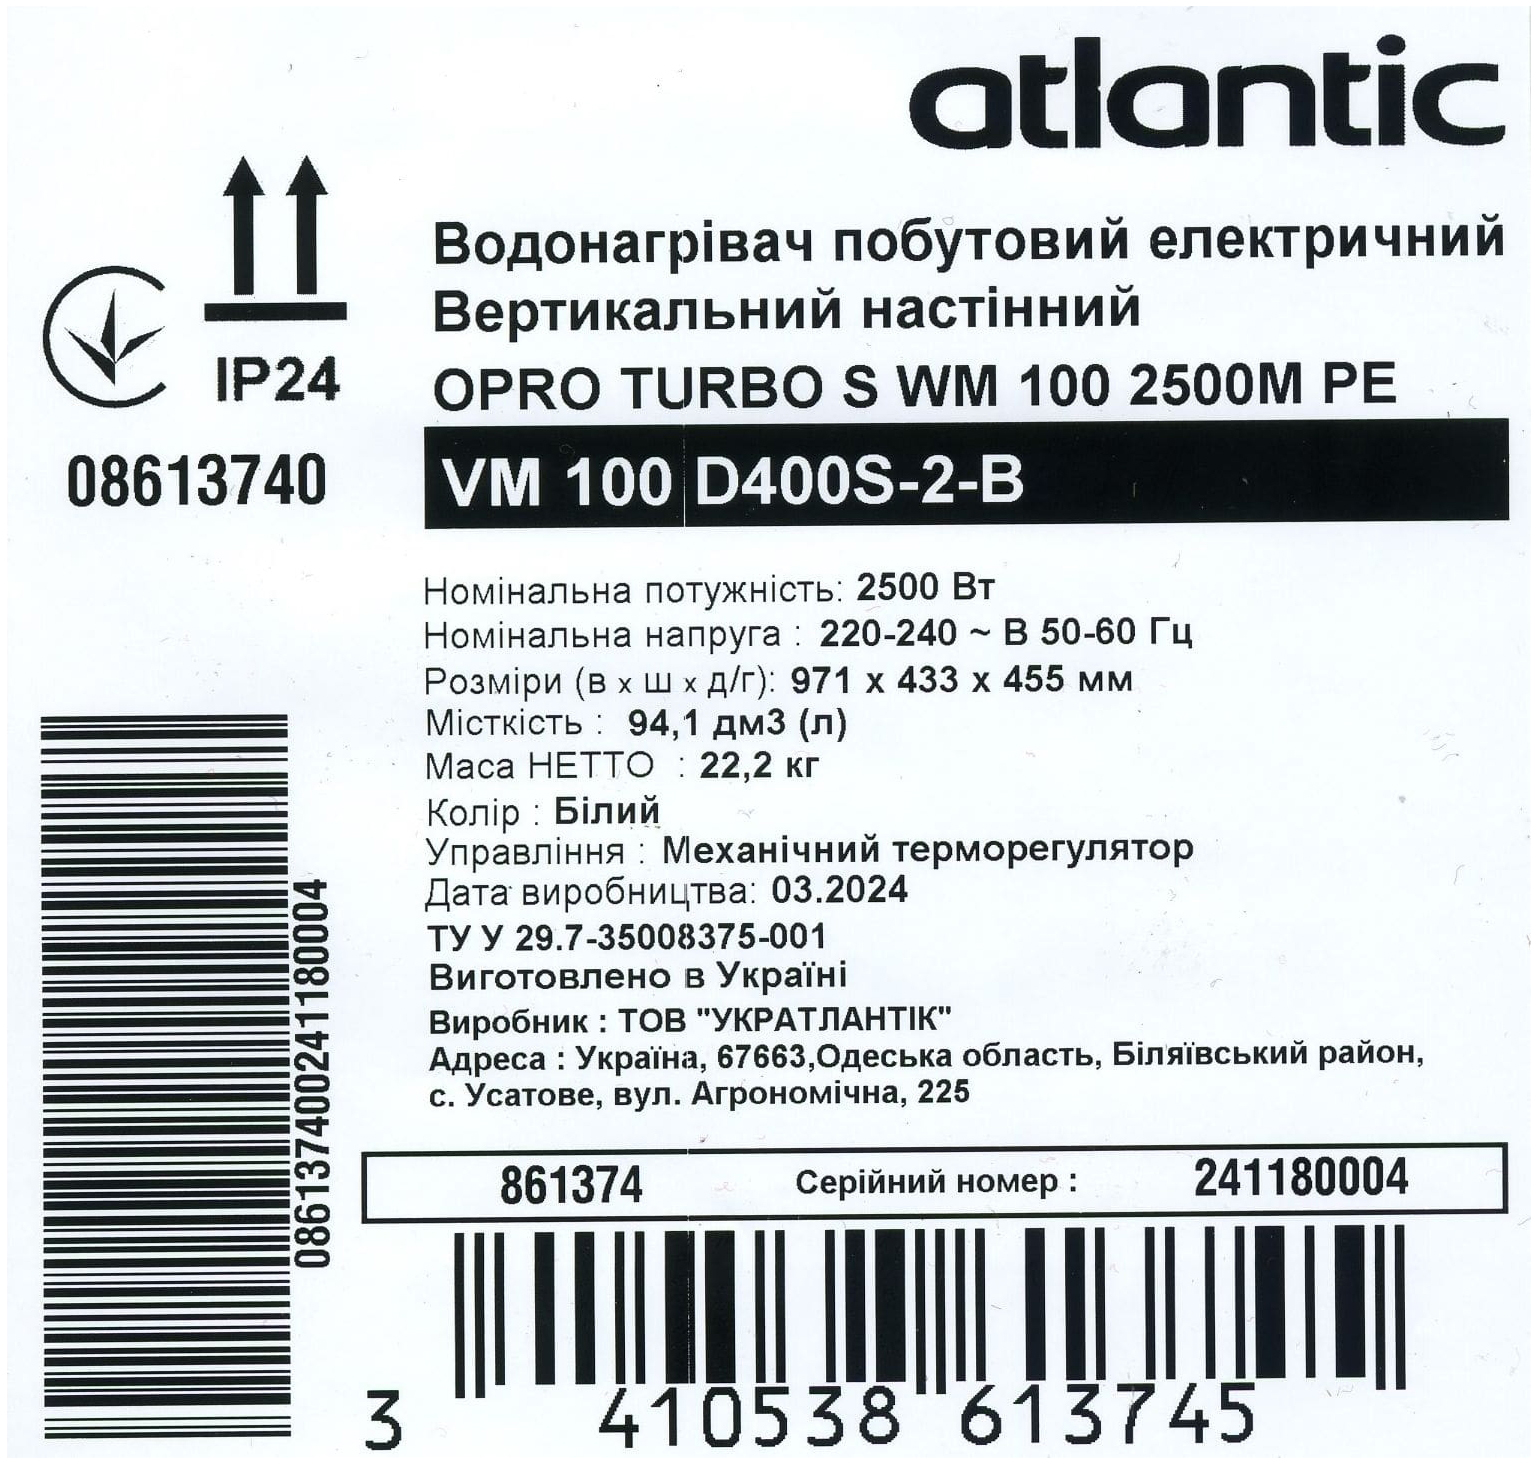 Atlantic Opro Turbo VM 100 D400S-2-B (2500W) в магазині в Києві - фото 10